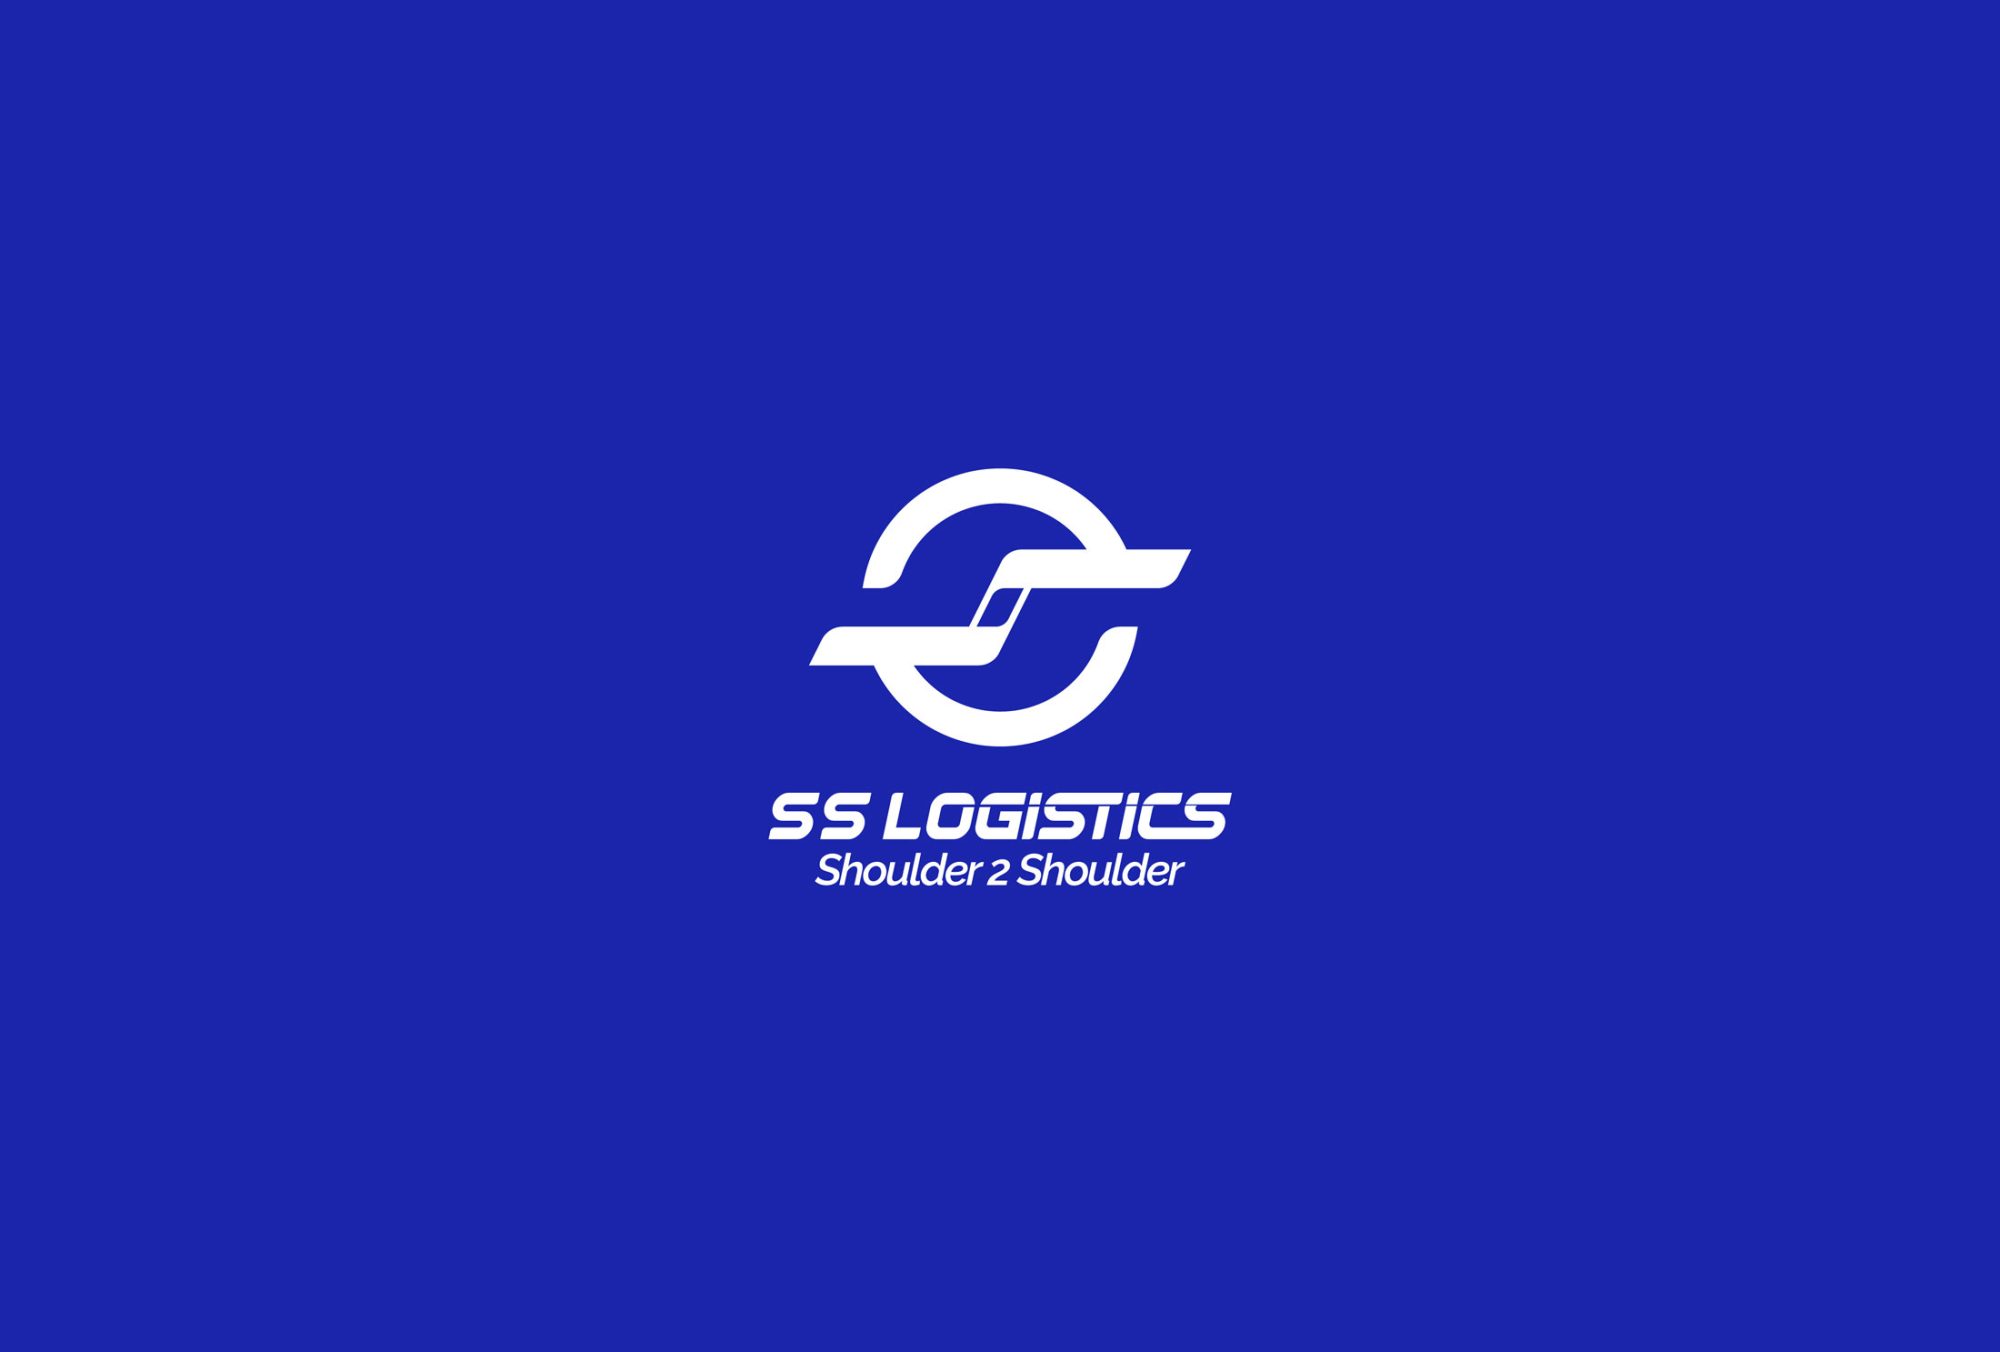 SS Logistics